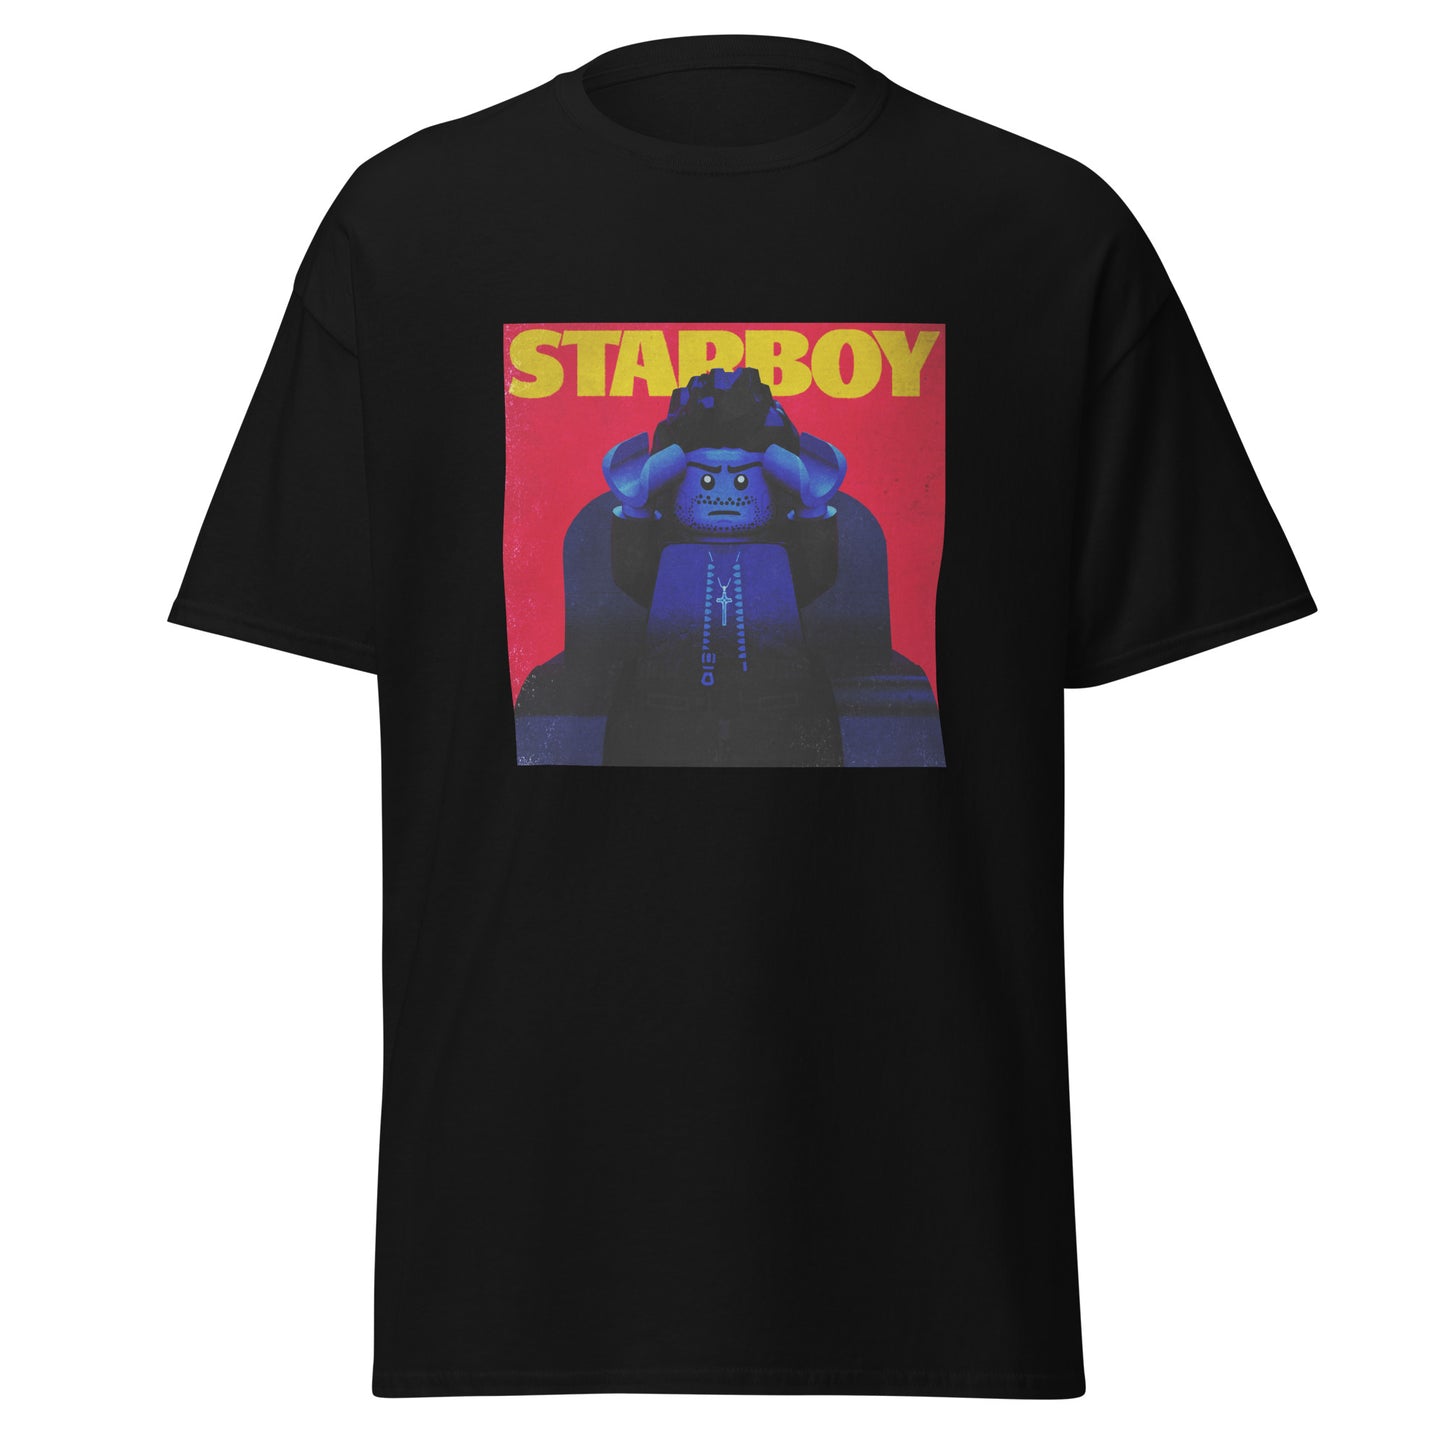 "The Weeknd - Starboy" Lego Parody Tshirt